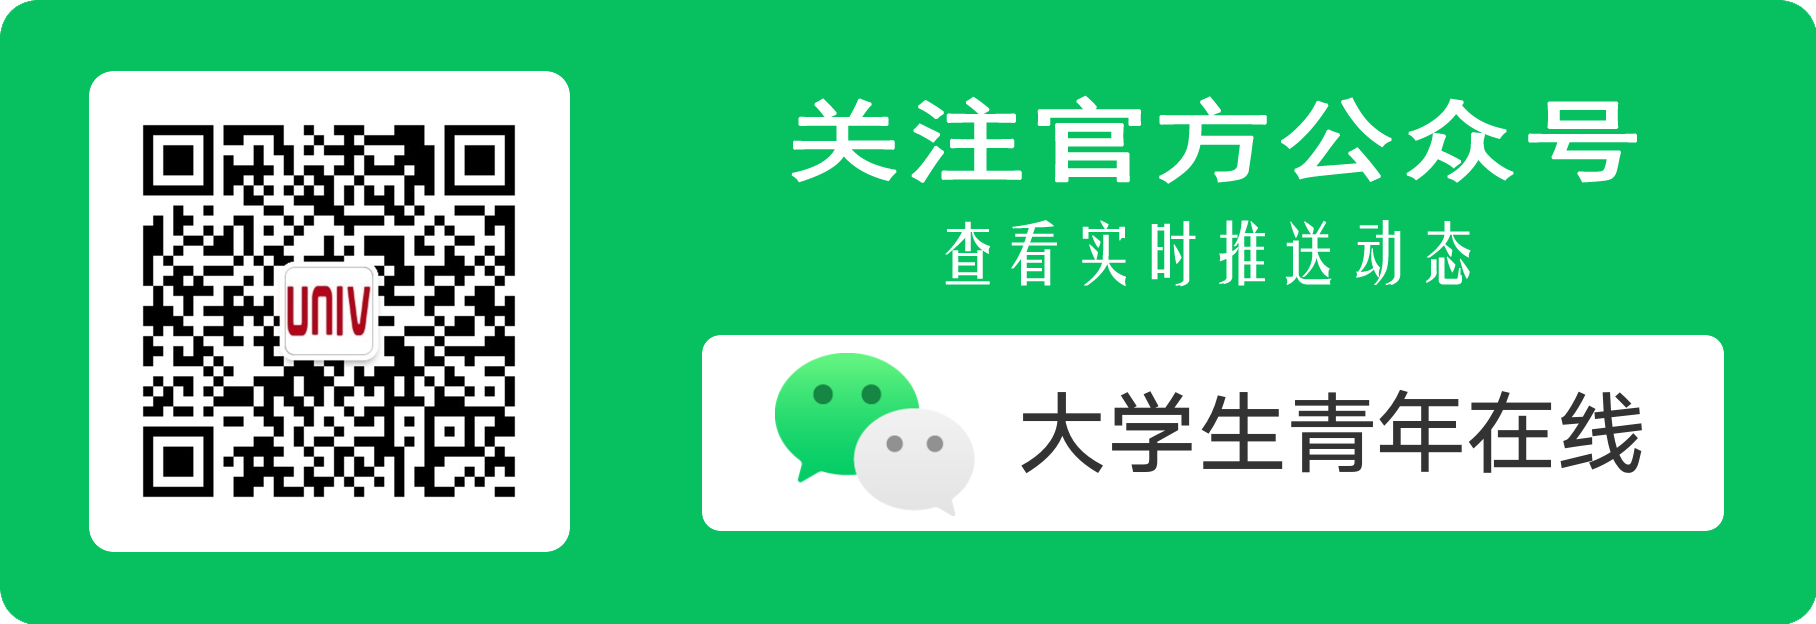 欢迎关注中国大学生网官方微信公众号